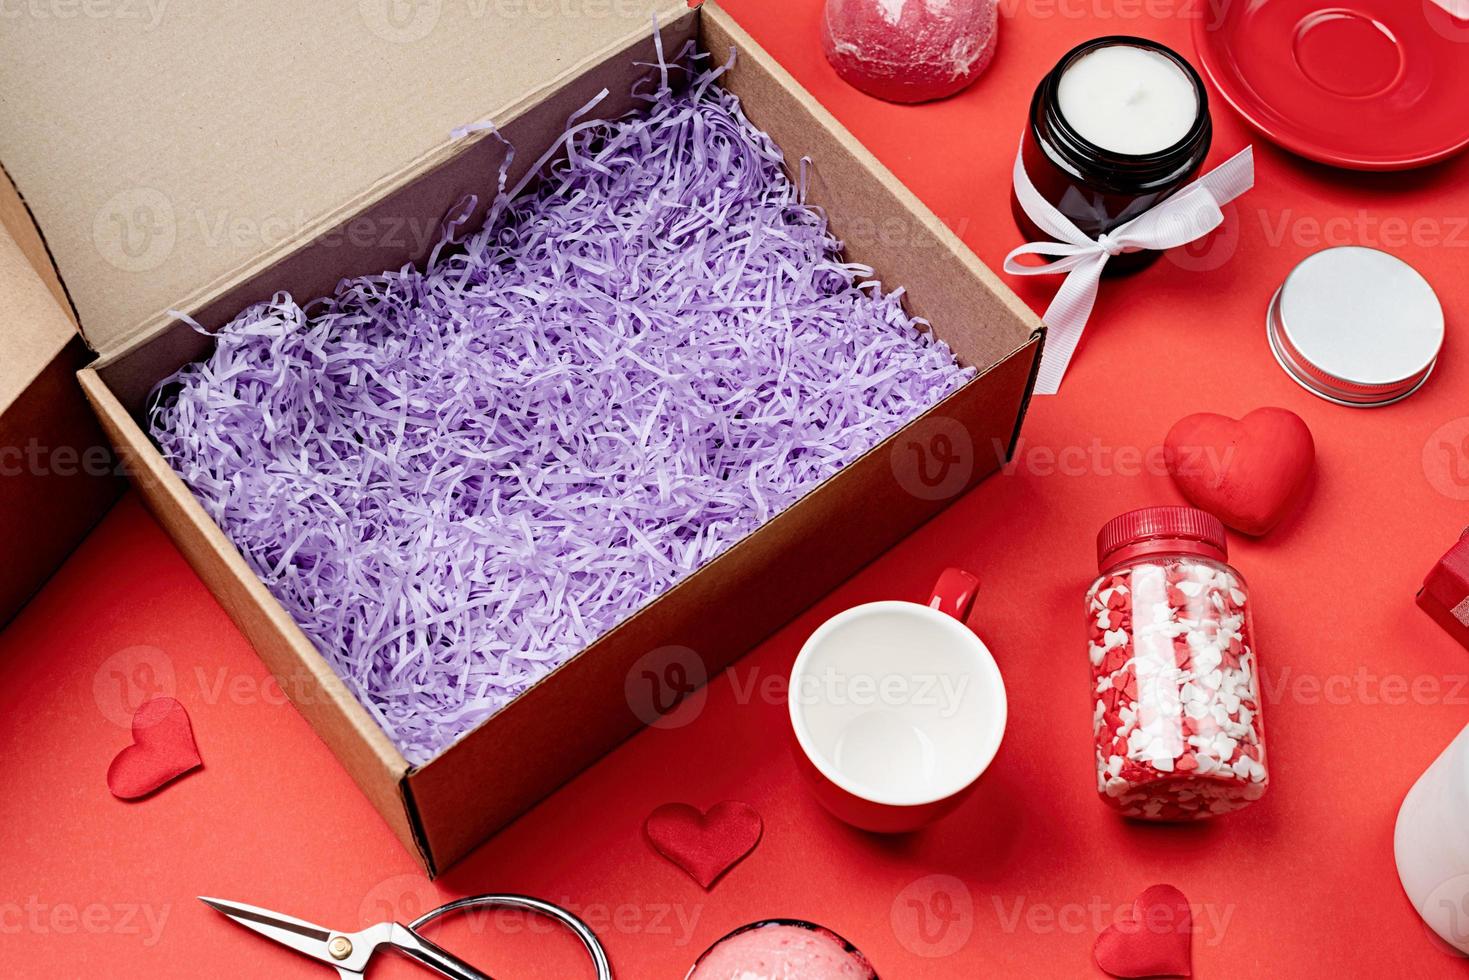 caja de regalo de temporada para el día de san valentín con velas, copa roja y dulces en forma de corazón sobre fondo rojo foto